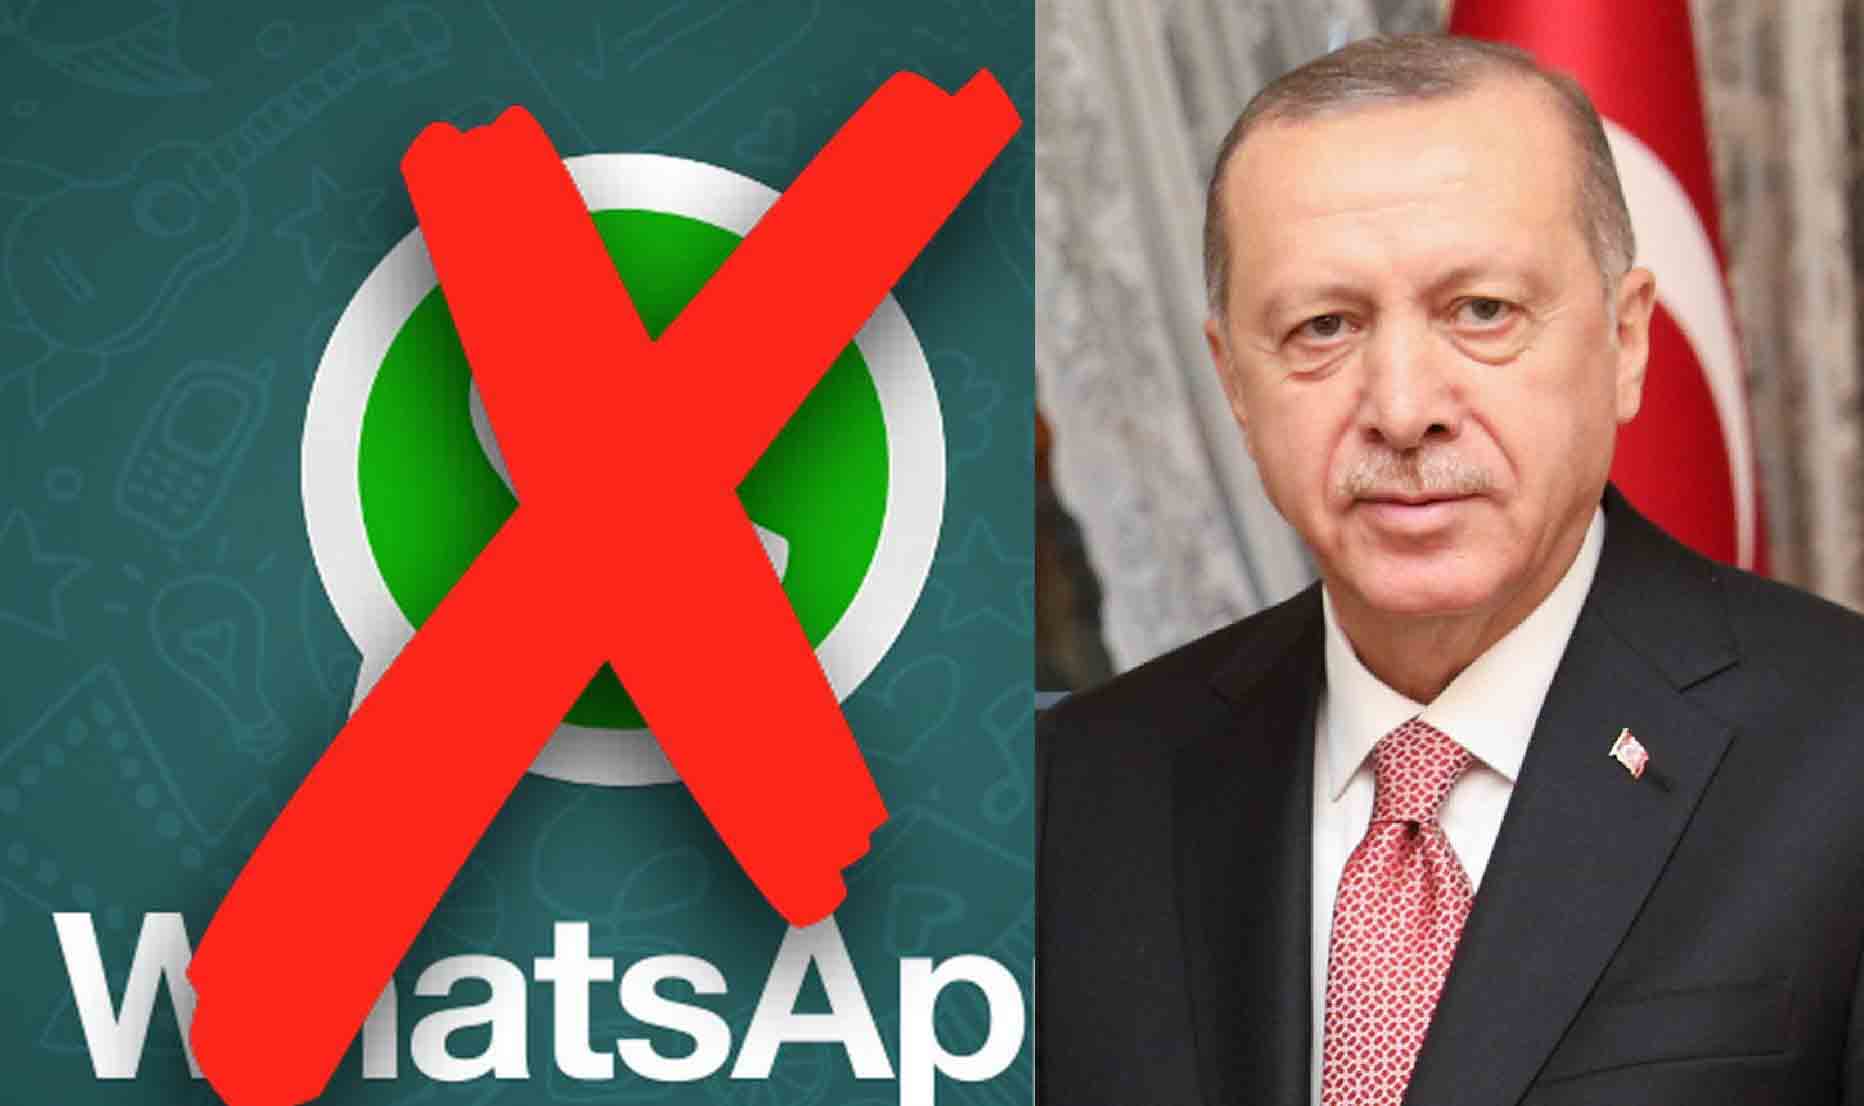 رییس جمهور ترکیه هم از واتس اپ رفت!